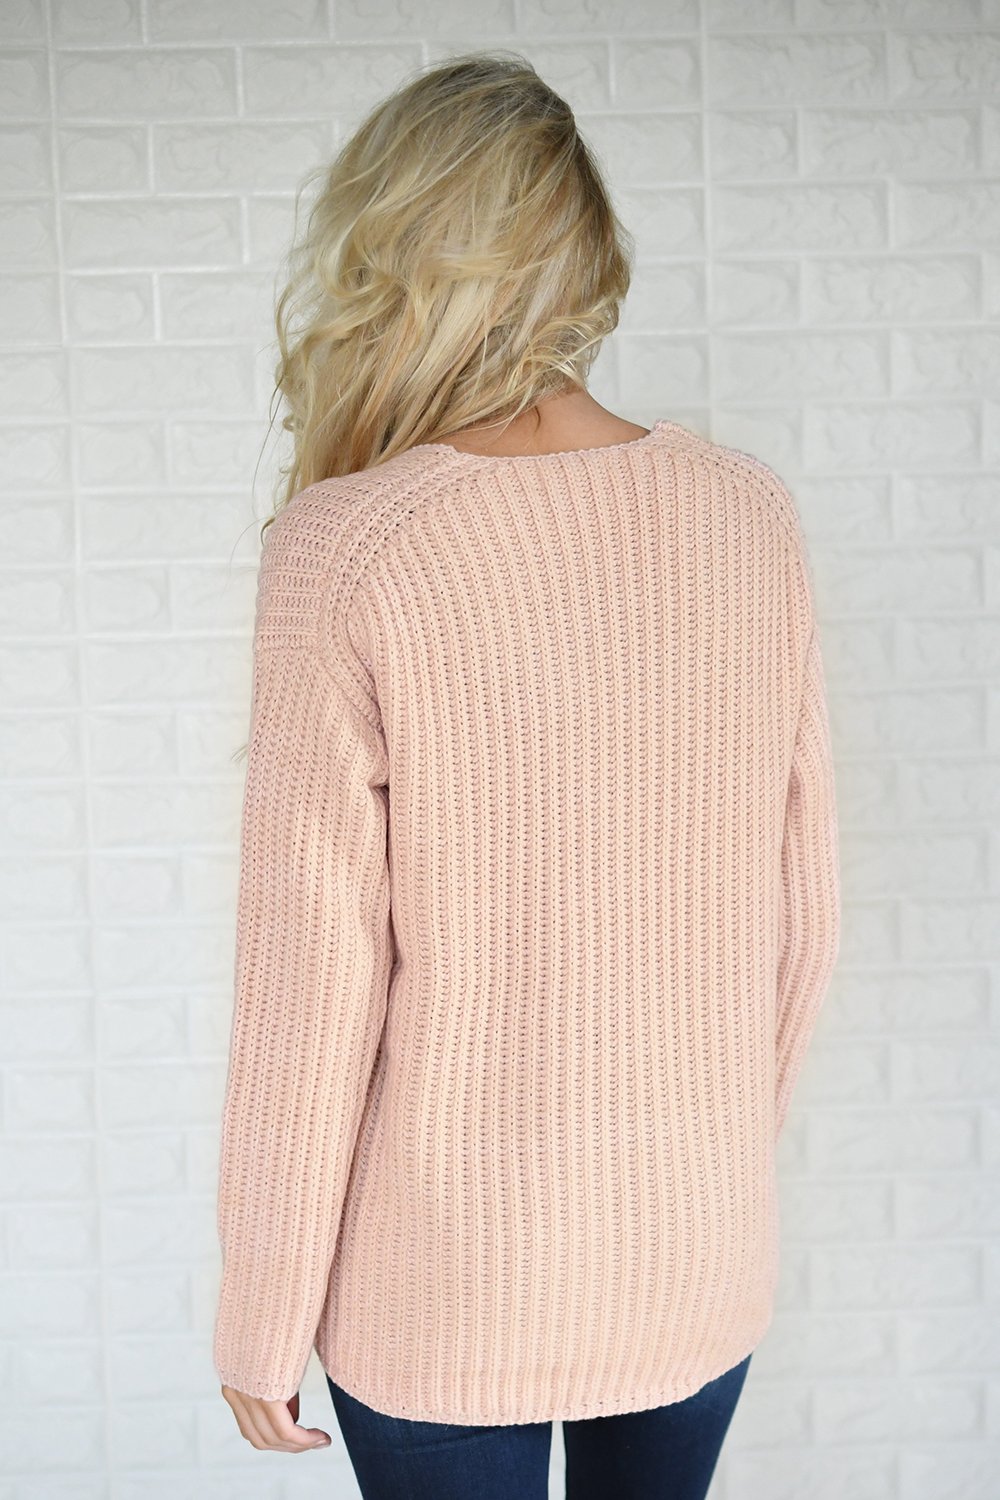 Hello Beautiful Blush Knit Sweater